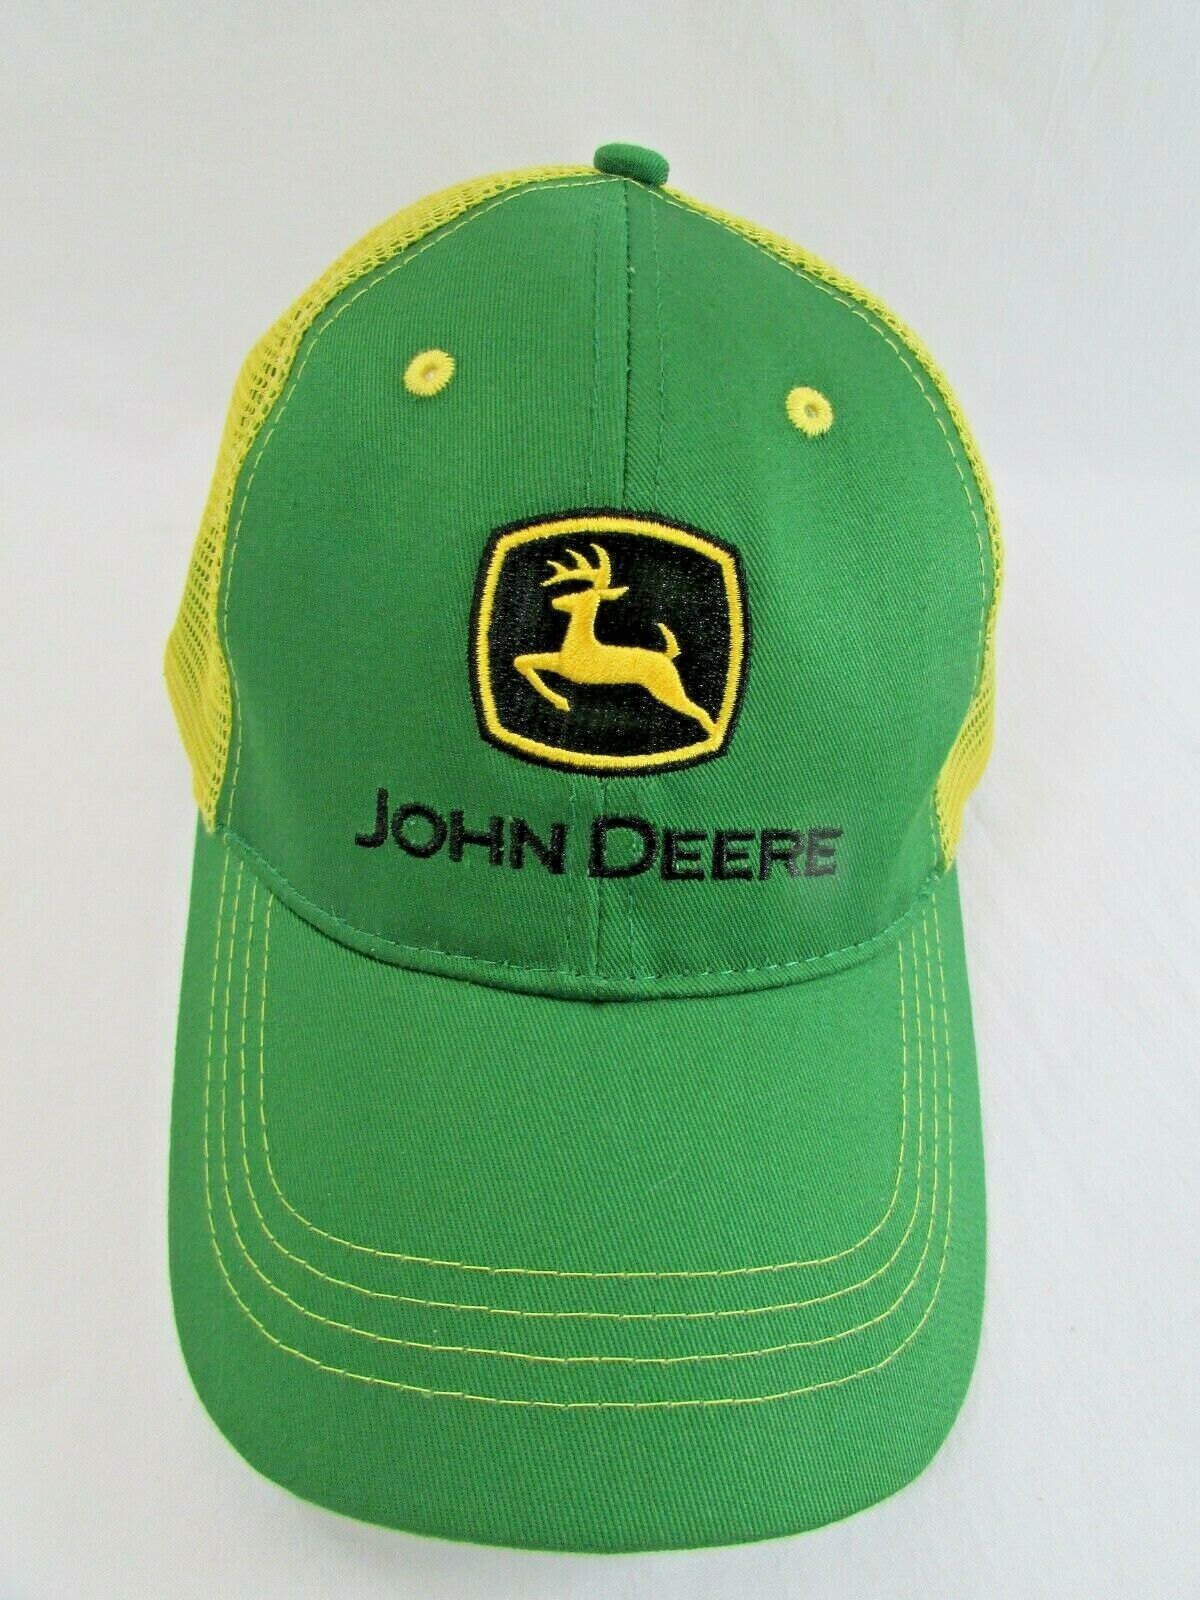 Vintage John Deere Trucker Hat Cap Snap Back Mesh Green Yellow Men’s 